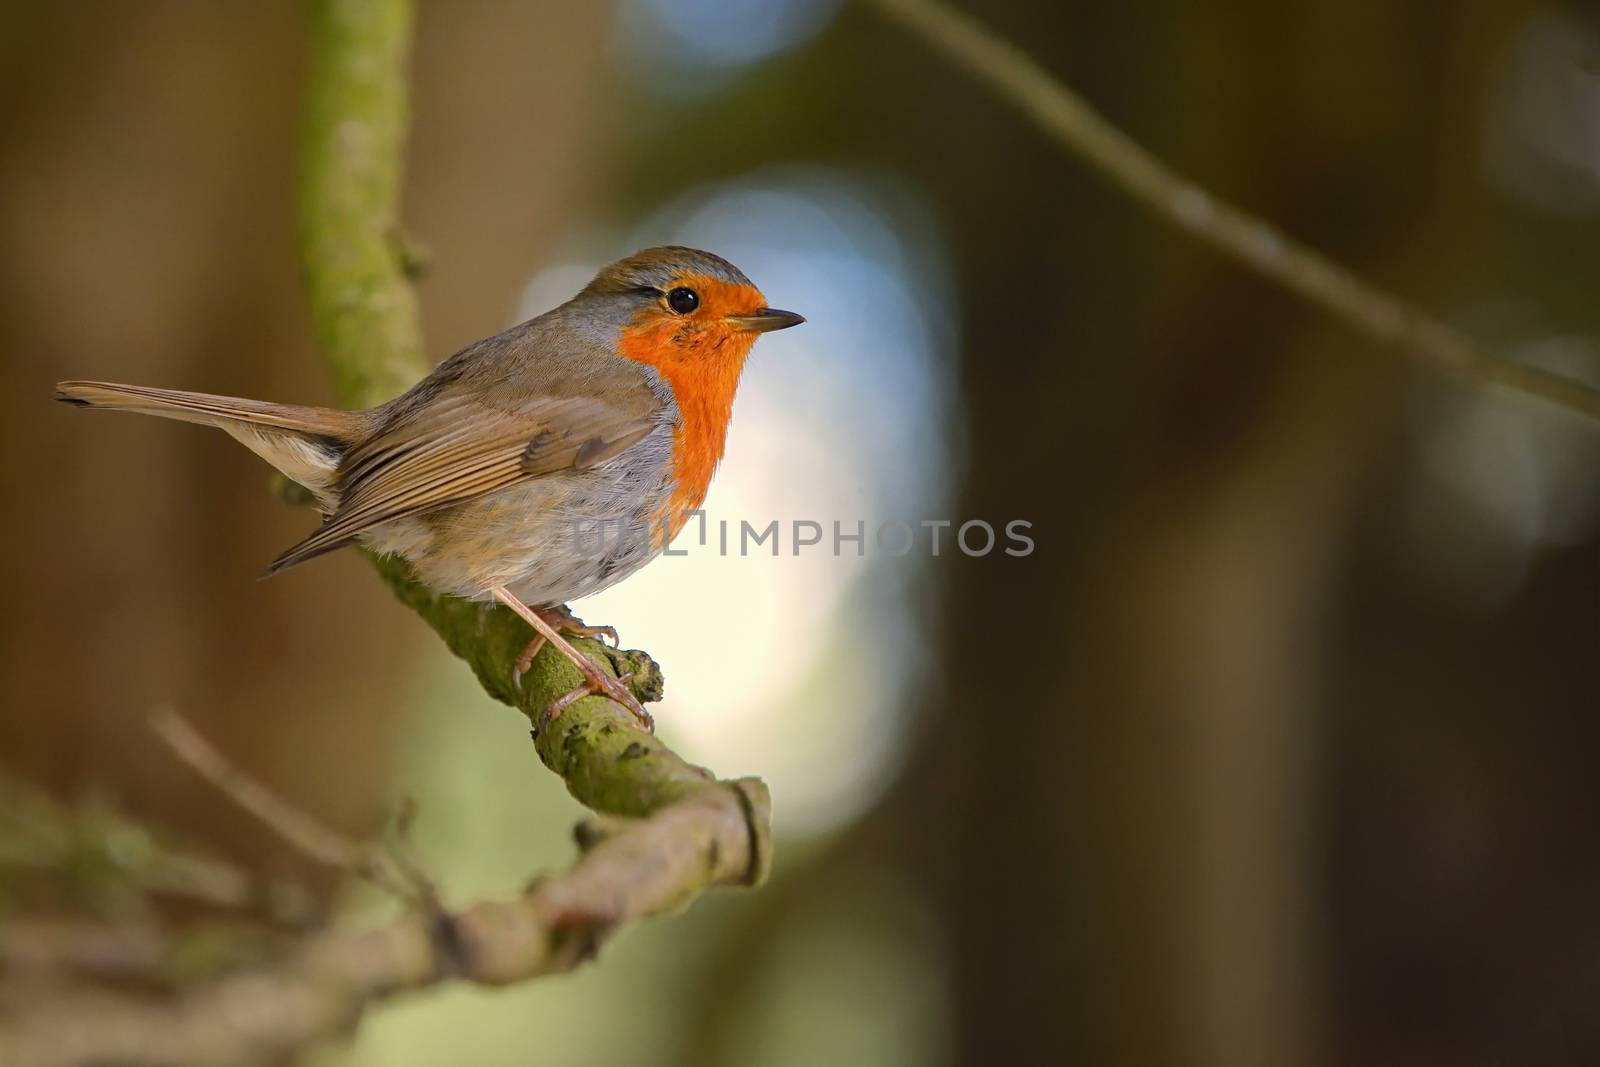 Cute little robin bird on brunch in park